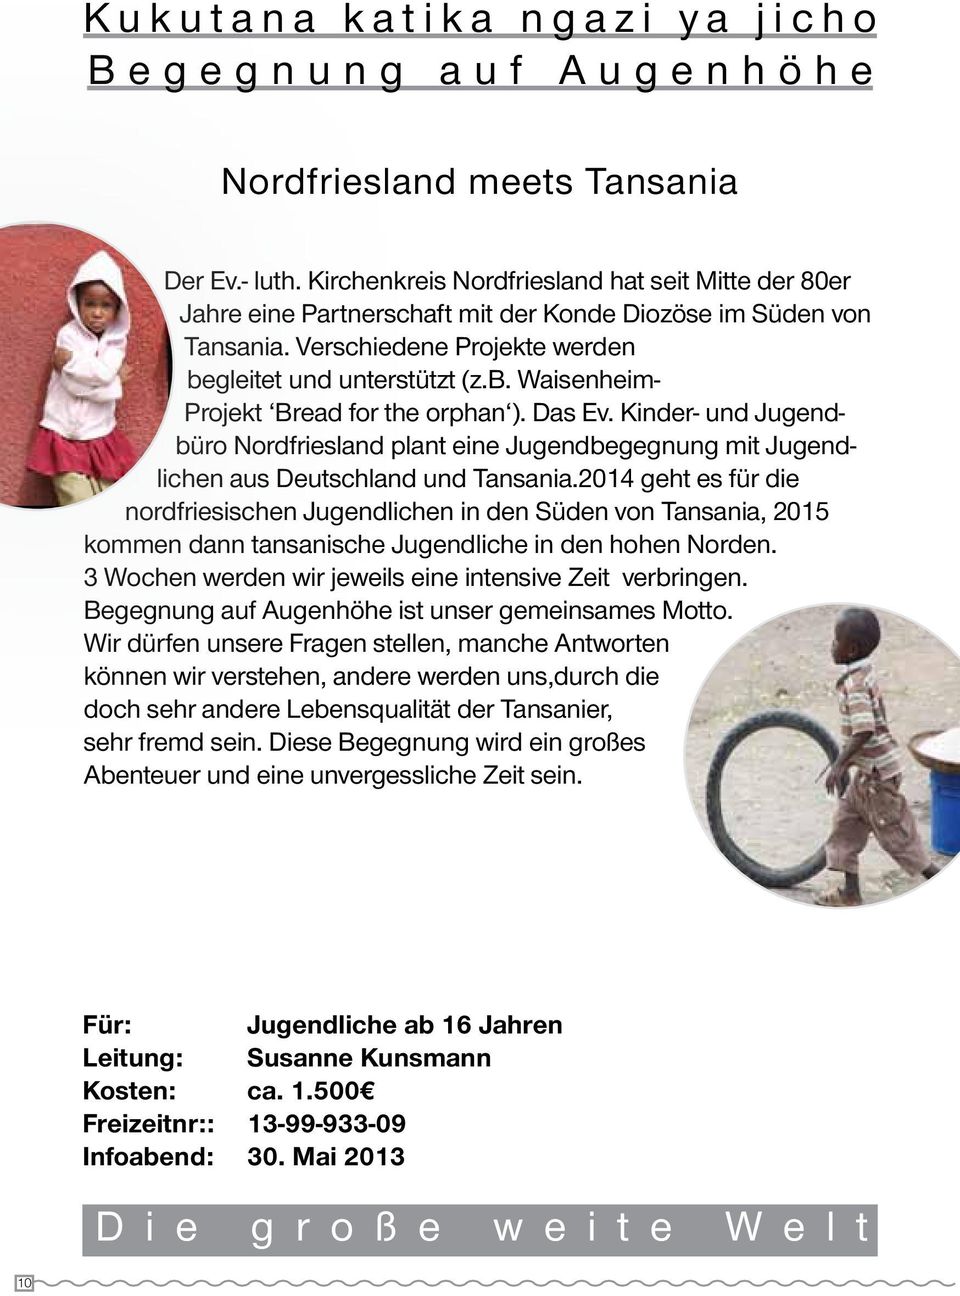 Das Ev. Kinder- und Jugendbüro Nordfriesland plant eine Jugendbegegnung mit Jugendlichen aus Deutschland und Tansania.